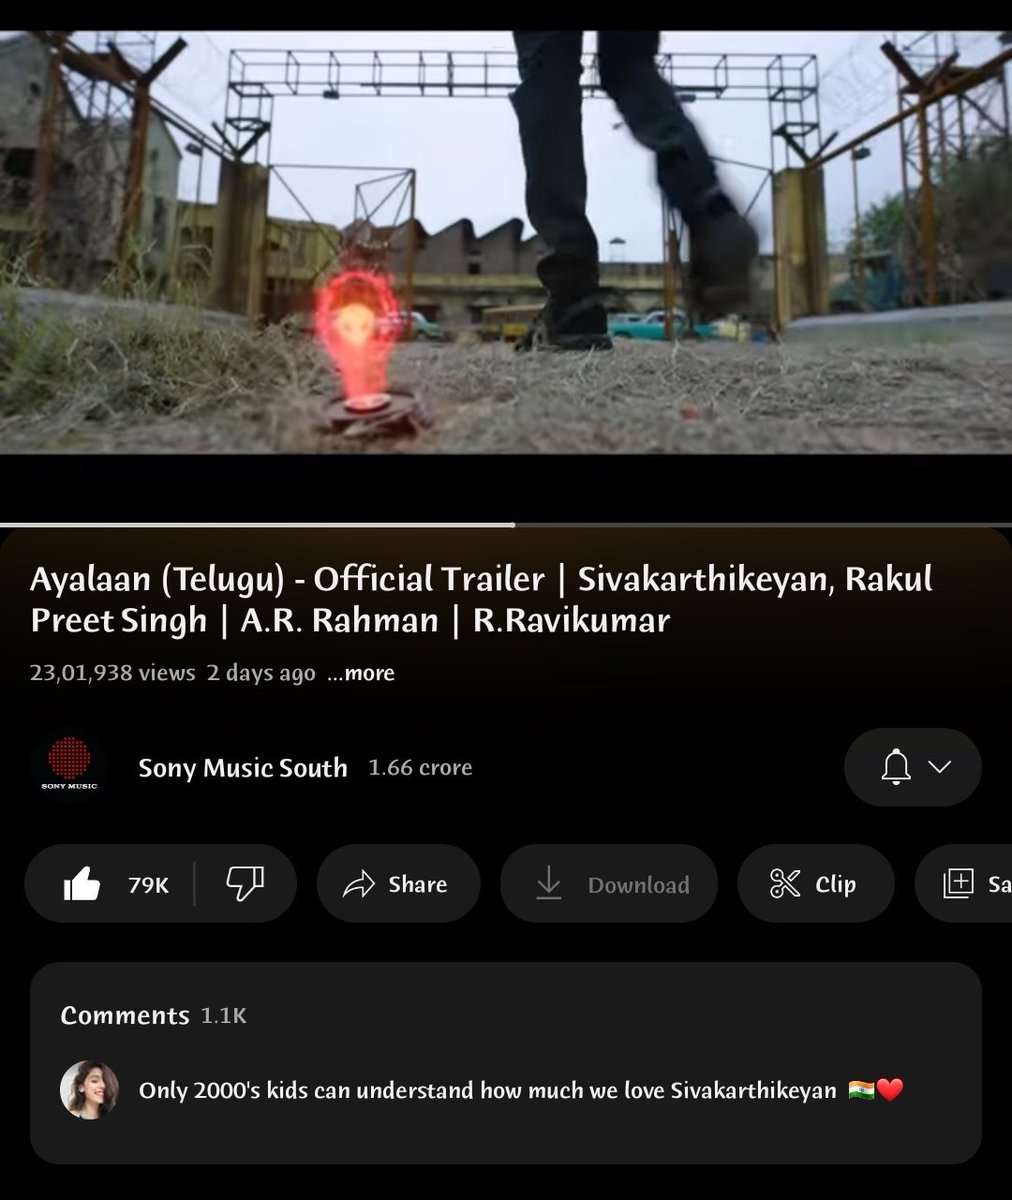 Tamil 6M+ views 🔥
Telugu 2.3M+views 🔥

8.3M+ views for #Ayalaan trailer 👽

#AyalaanFromPongal